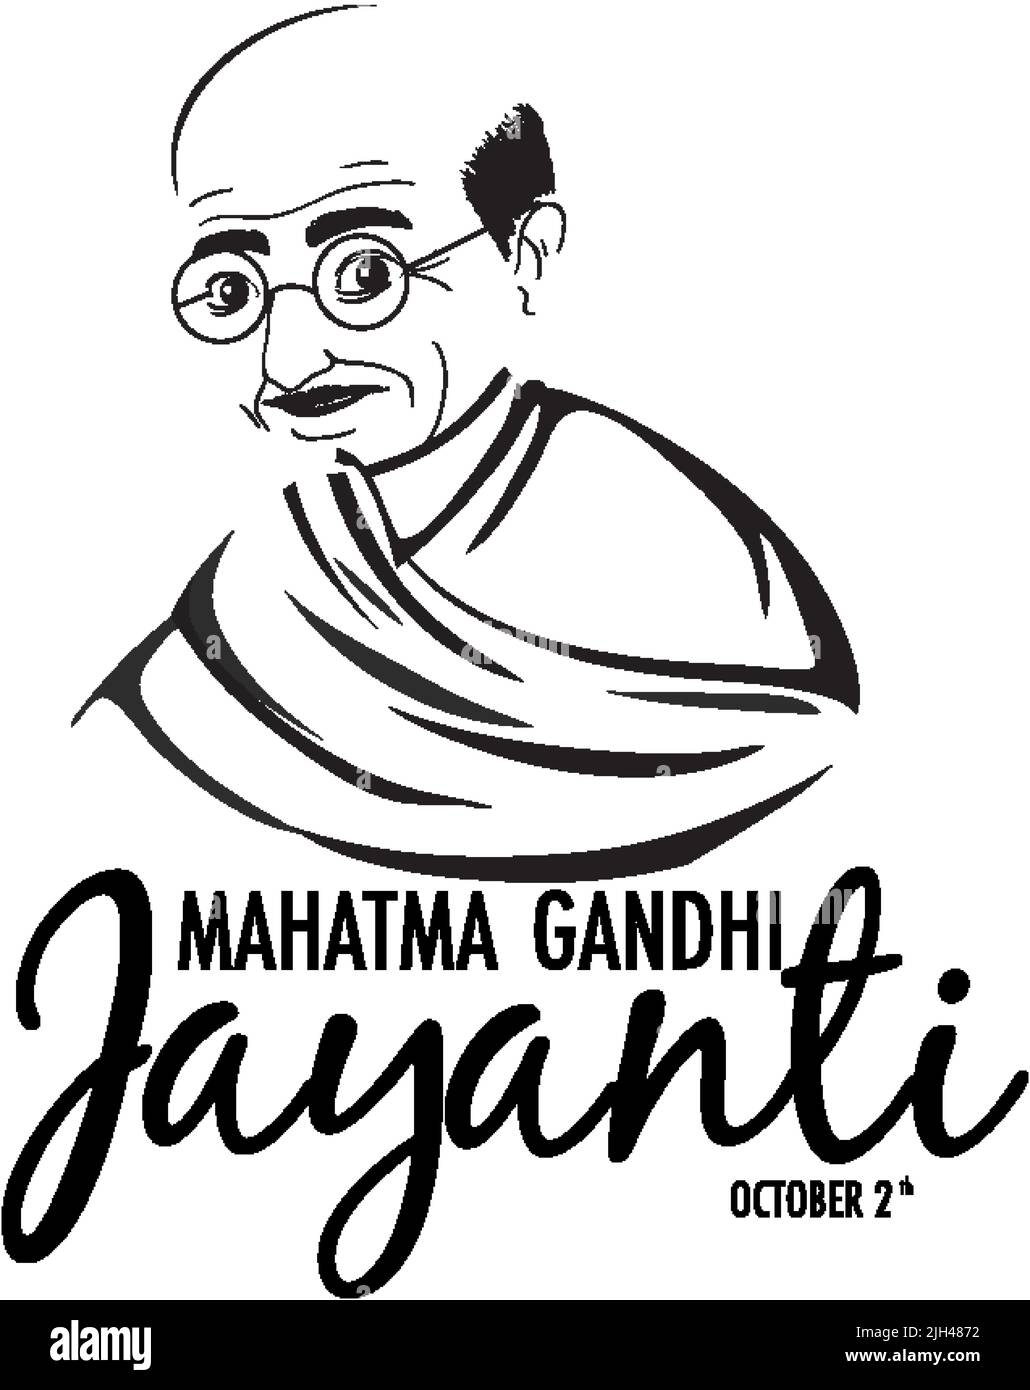 Mahatma Gandhi Jayanti Day Poster illustration Stock Vector